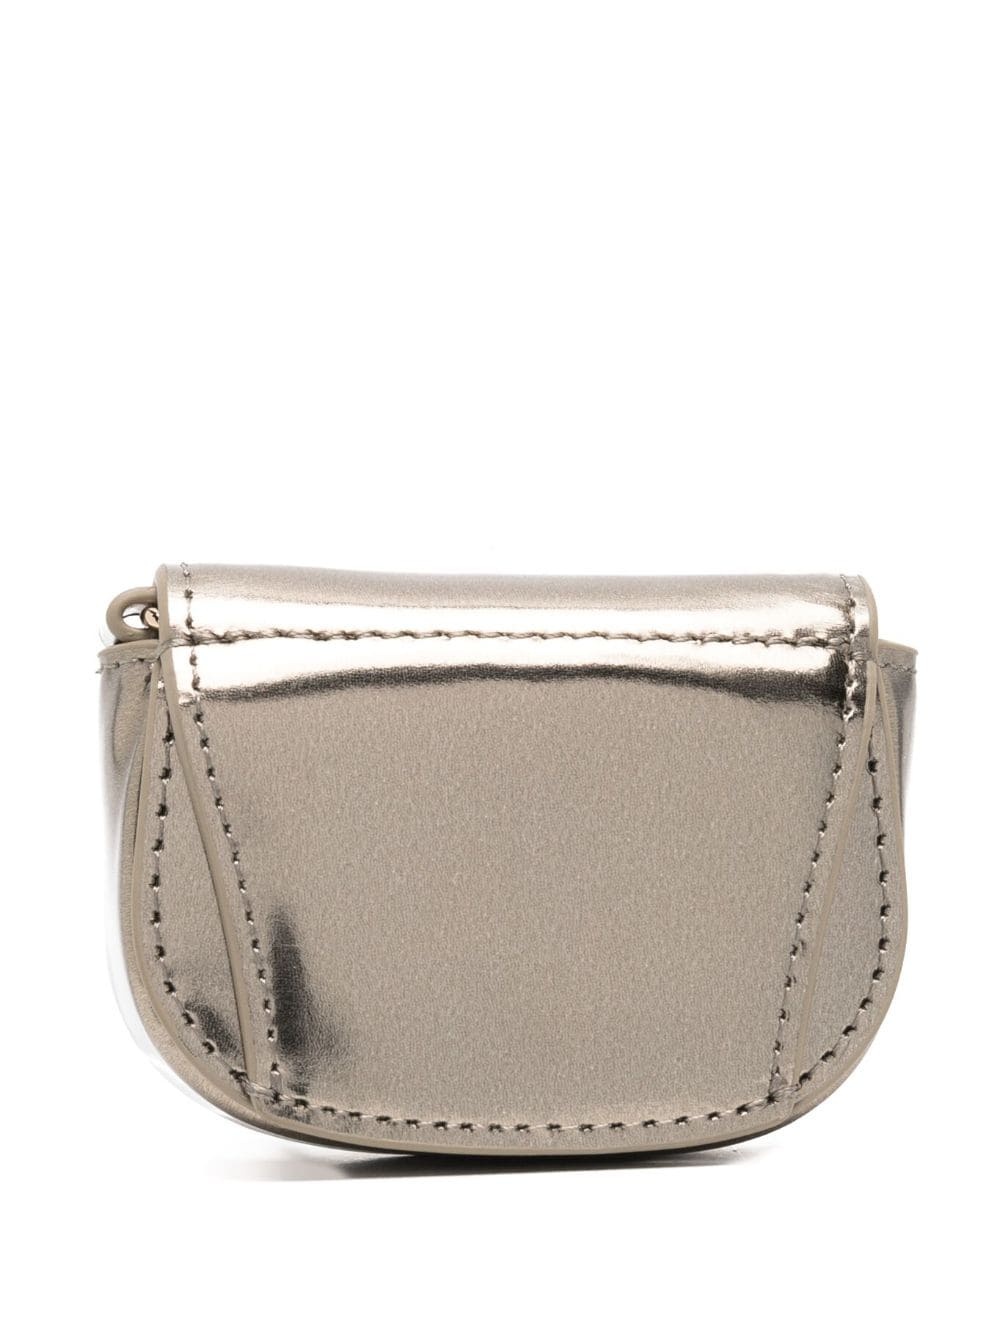 1DR XXS leather purse - 2